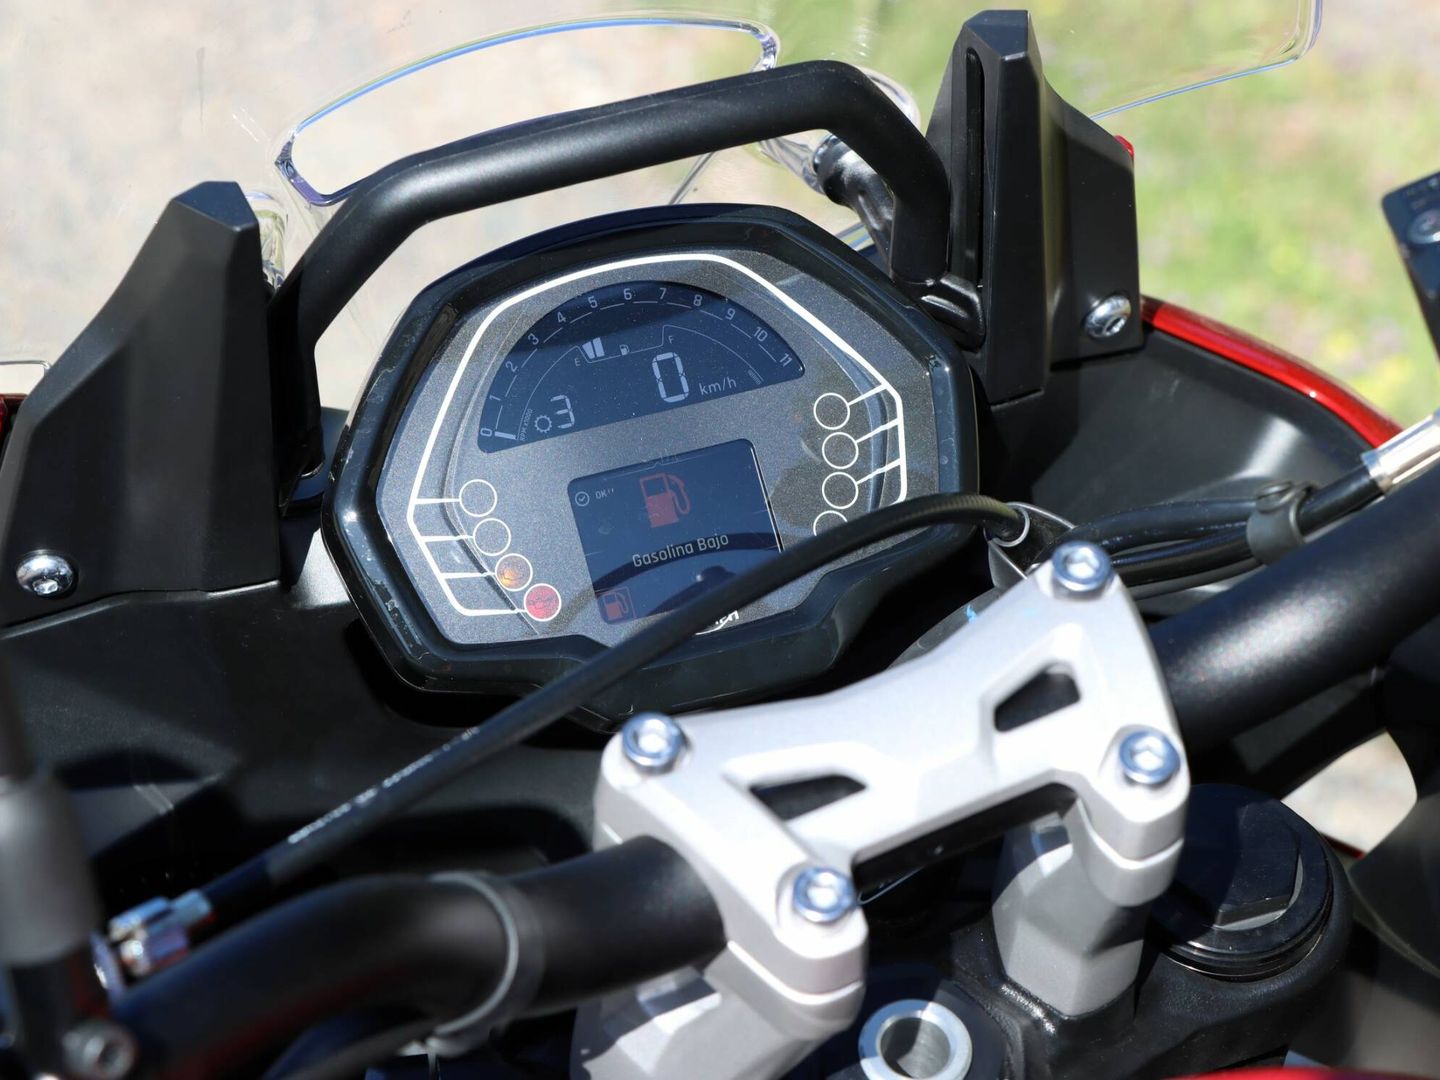 En la línea de la moto, la instrumentación cuenta con una pantalla TFT muy básica con la información precisa.